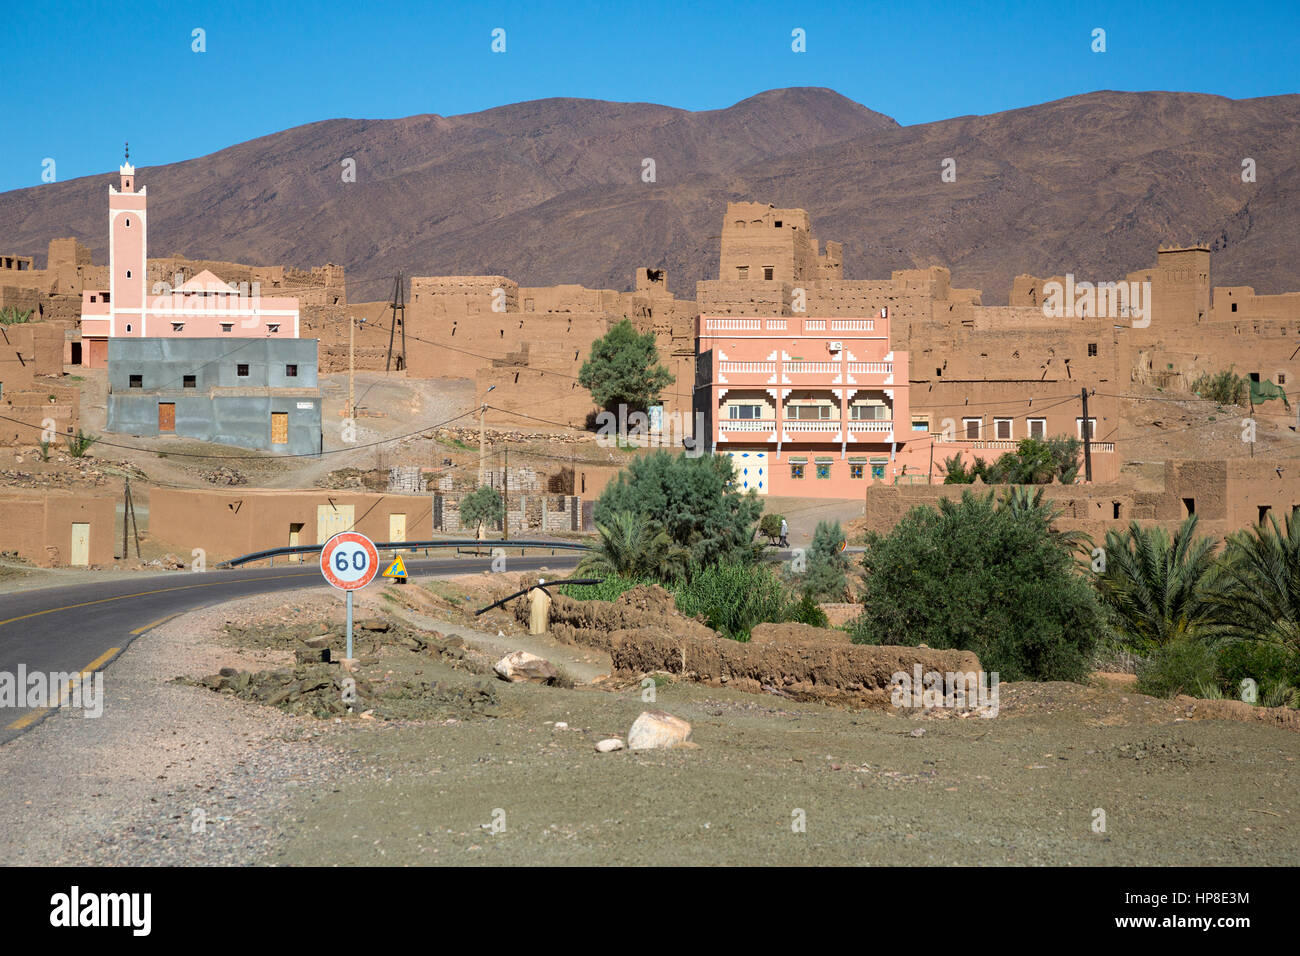 La vallée du Drâa, au Maroc. Nouvelle Mosquée, Maison Neuve, Maisons anciennes dans le village. Banque D'Images